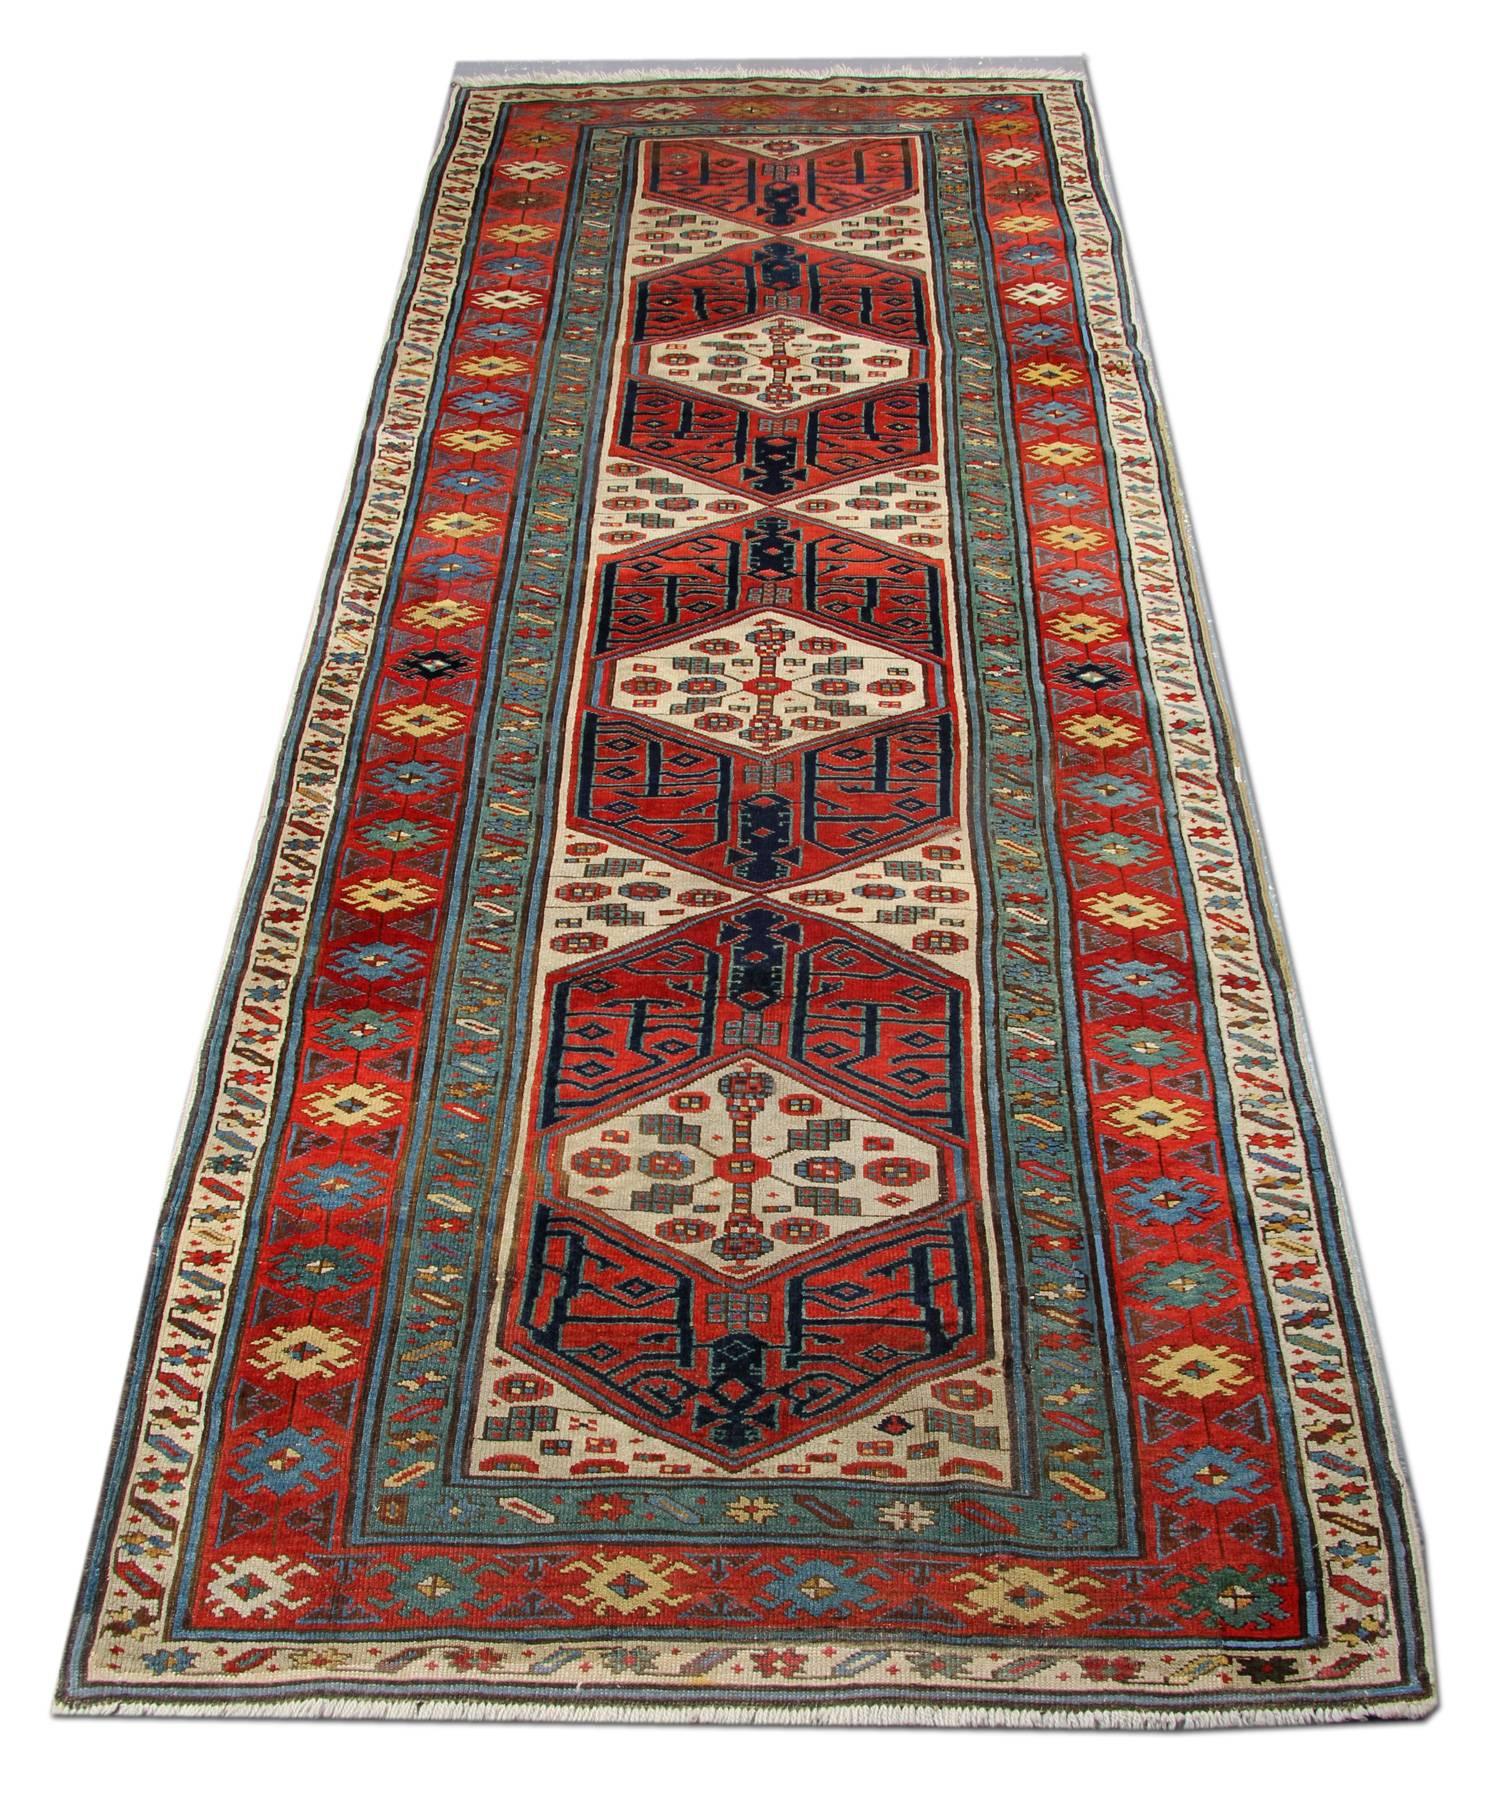 Ein antiker Teppich seltene kaukasische Kazak handgefertigt Teppich aus dem 18. Dieser Teppich hat ein ungewöhnliches geometrisches Muster auf rotem Ziegelgrund. Dieser Webteppich ist von mehreren kontrastierenden floralen und geometrischen Mustern